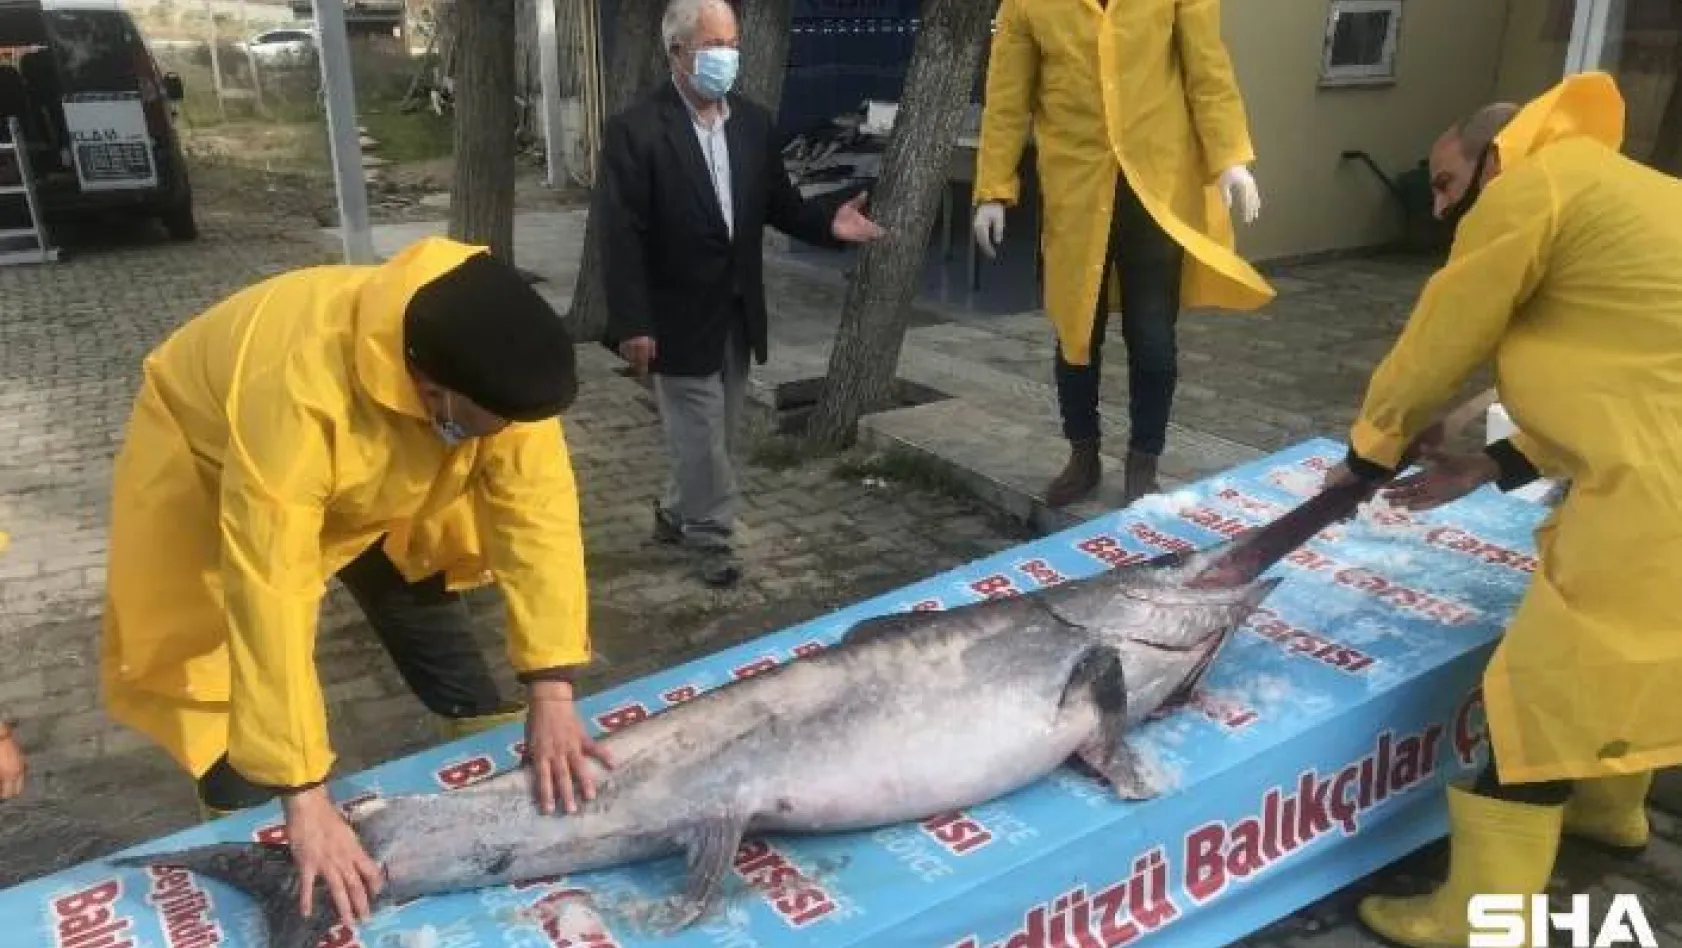 Marmara Denizi açıklarında dev 'Kılıç Balığı' yakalandı